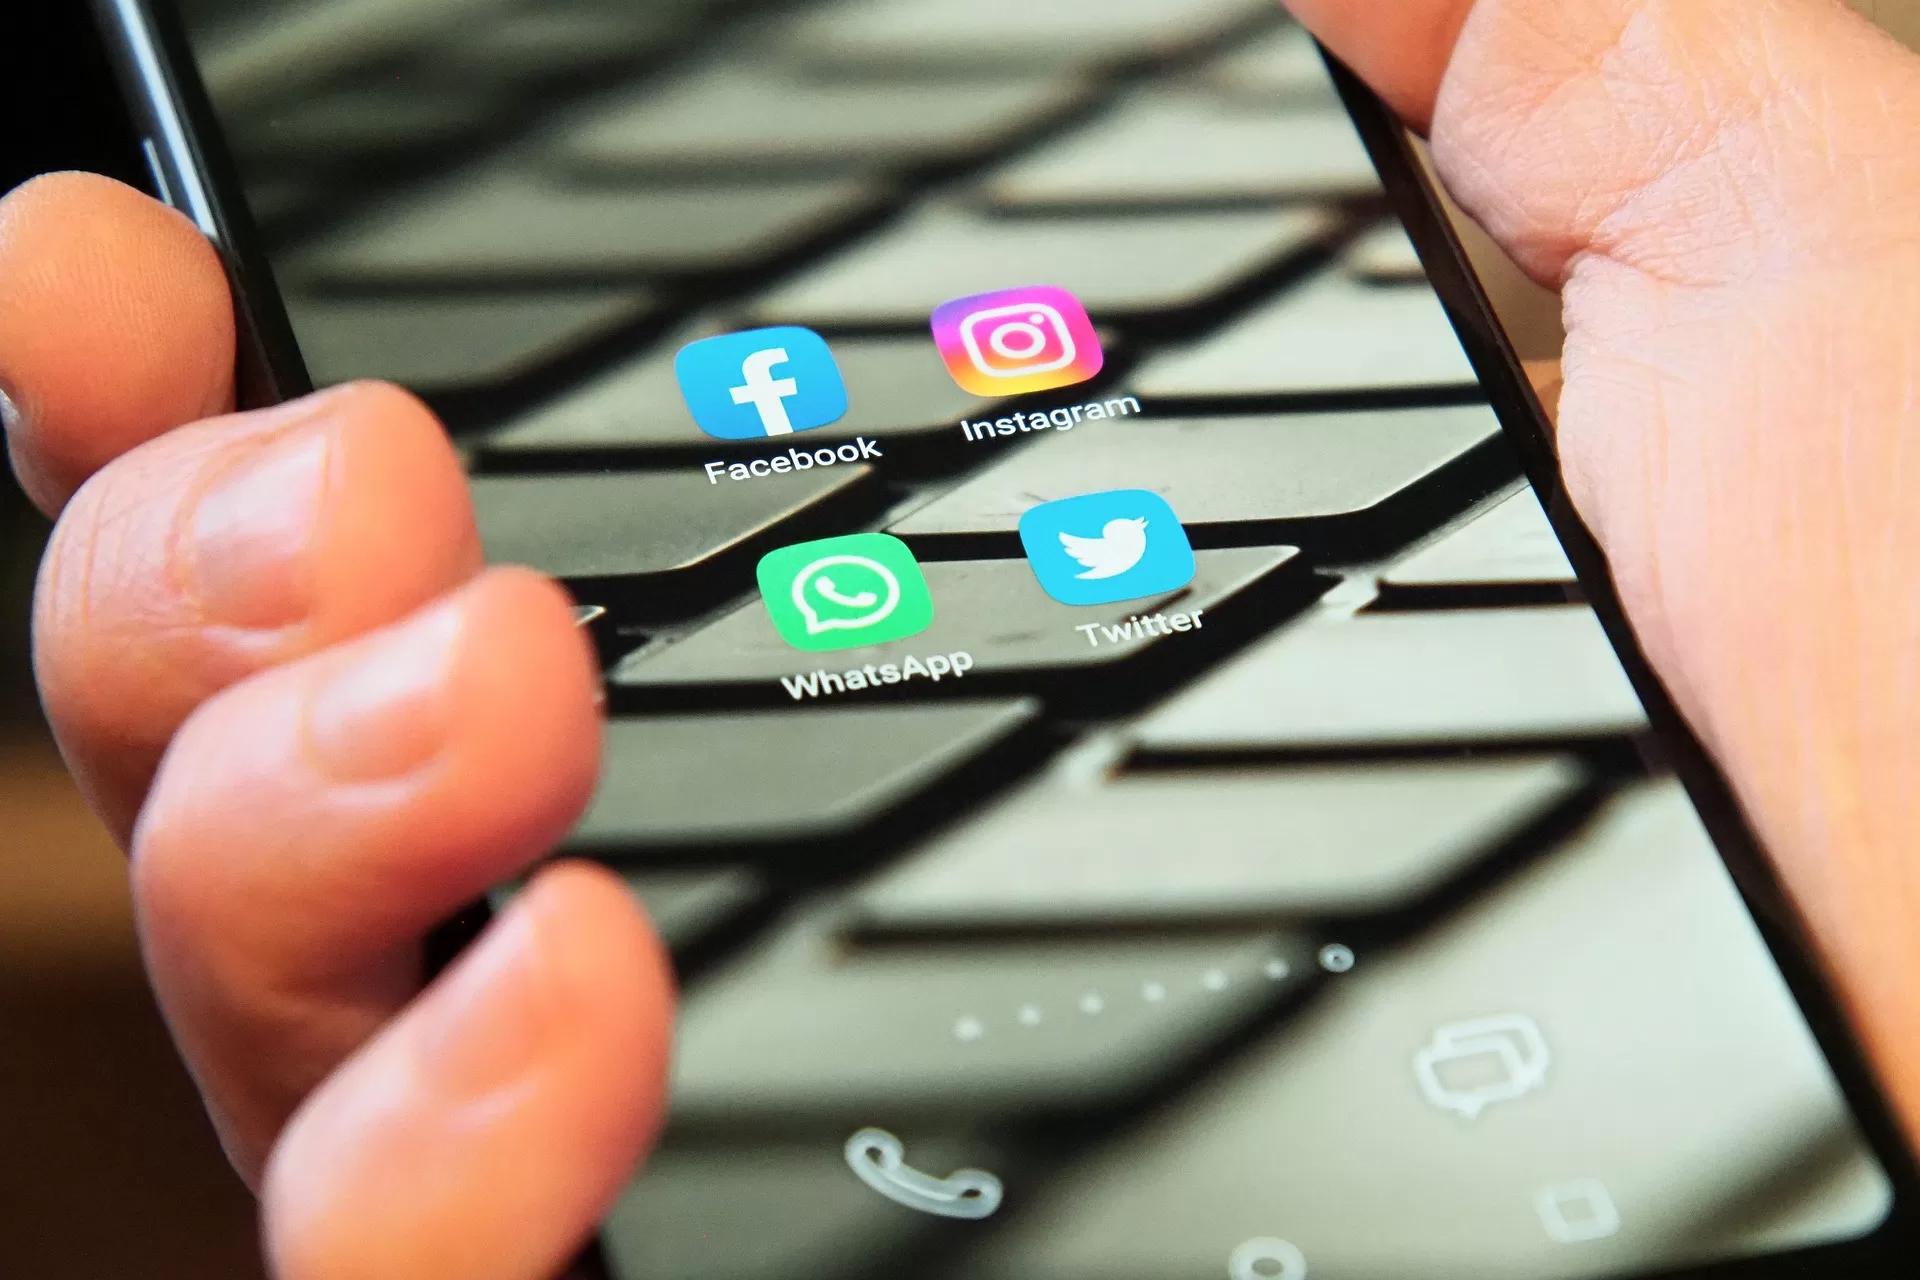 Gambar tangan seseorang sedang memegang sebuah smartphone yang berisi ikon-ikon media sosial, salah satunya WhatsApp, ilustrasi trik membuka WA tanpa ketahuan online.